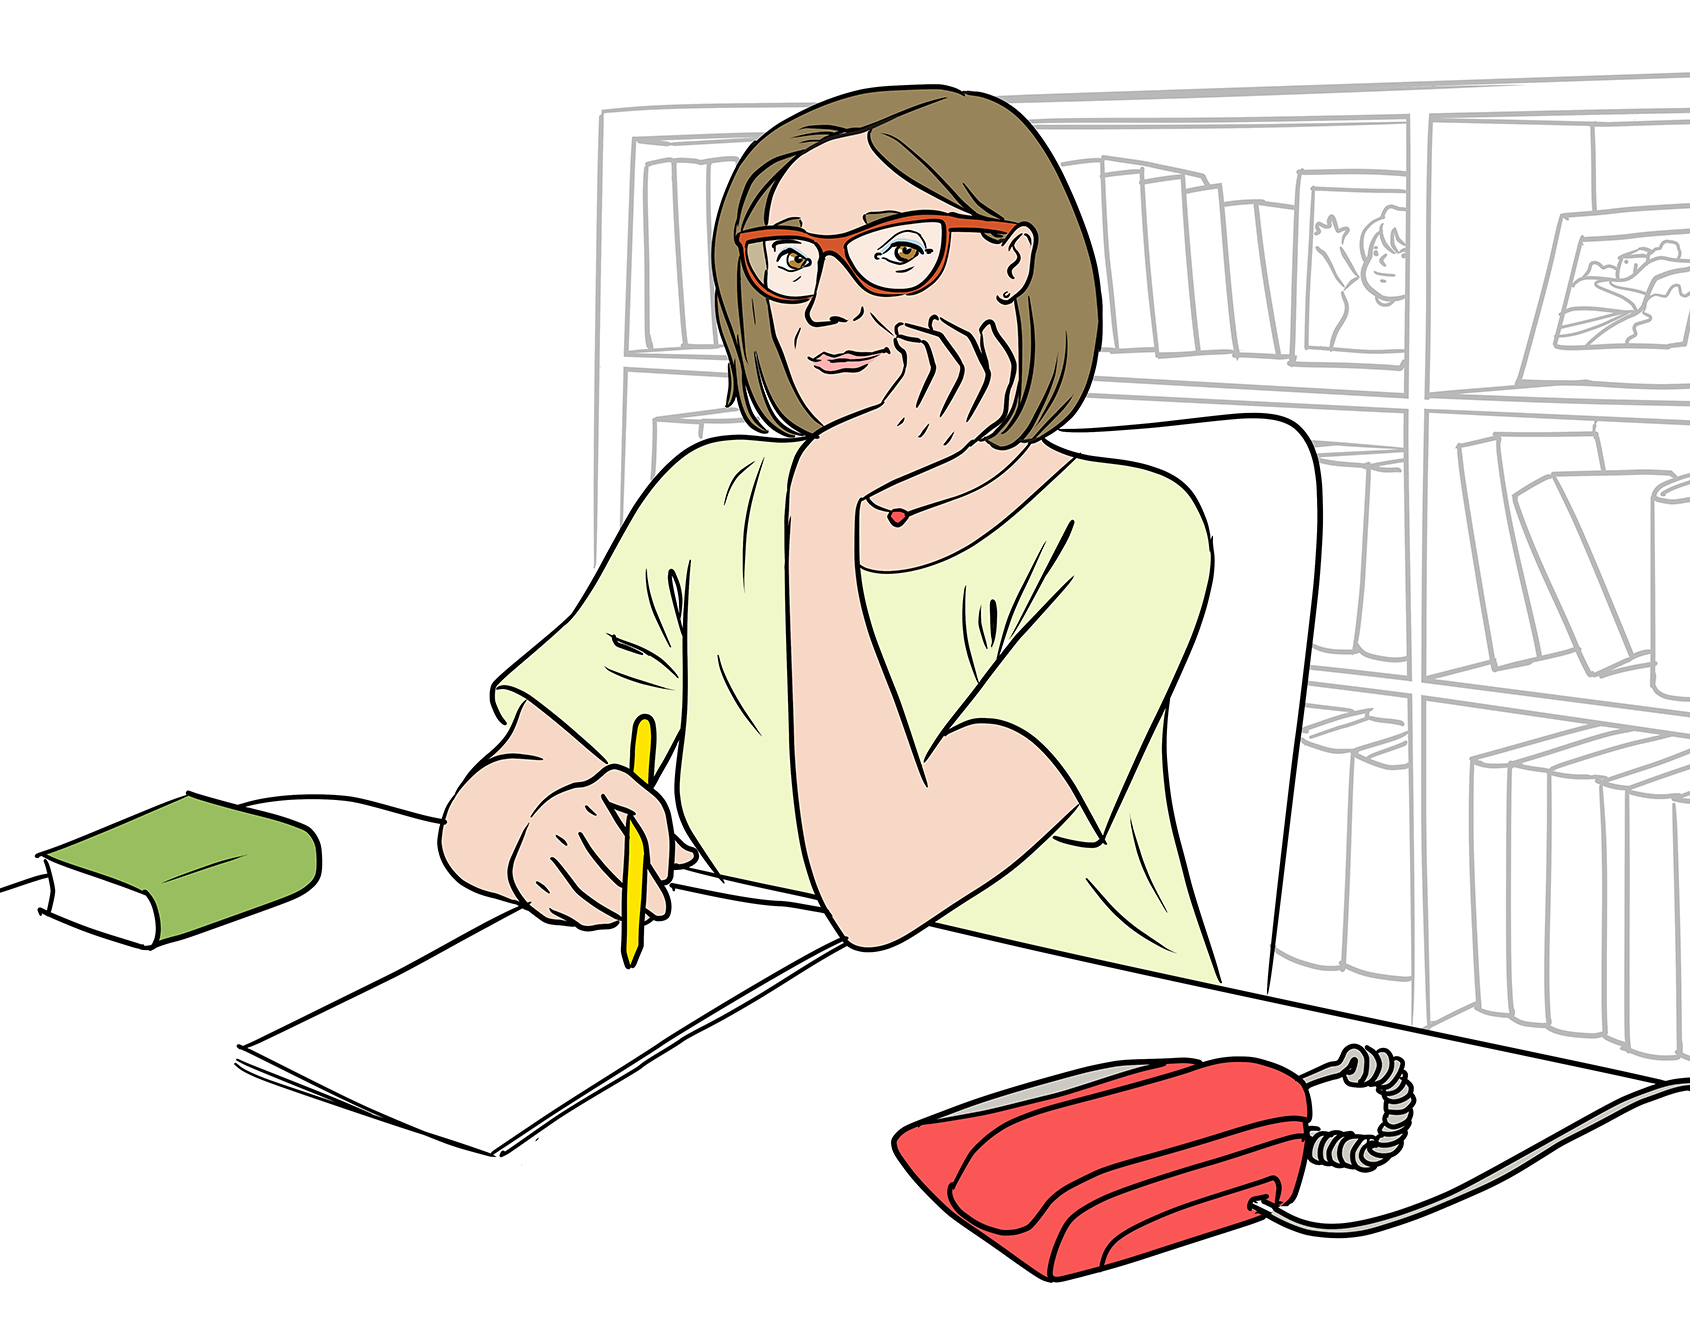 Illustration: Eine circa 60-jährige Frau mit halblangen braunen Haaren sitzt an einem Schreibtisch. Vor ihr liegen Blätter. Ihren Kopf hat sie auf die linke Hand gestützt. In der rechten Hand hält sie einen Stift. Neben ihr auf dem Schreibtisch befinden sich ein Buch und ein Telefon. Im Hintergrund steht ein Regal mit Büchern.